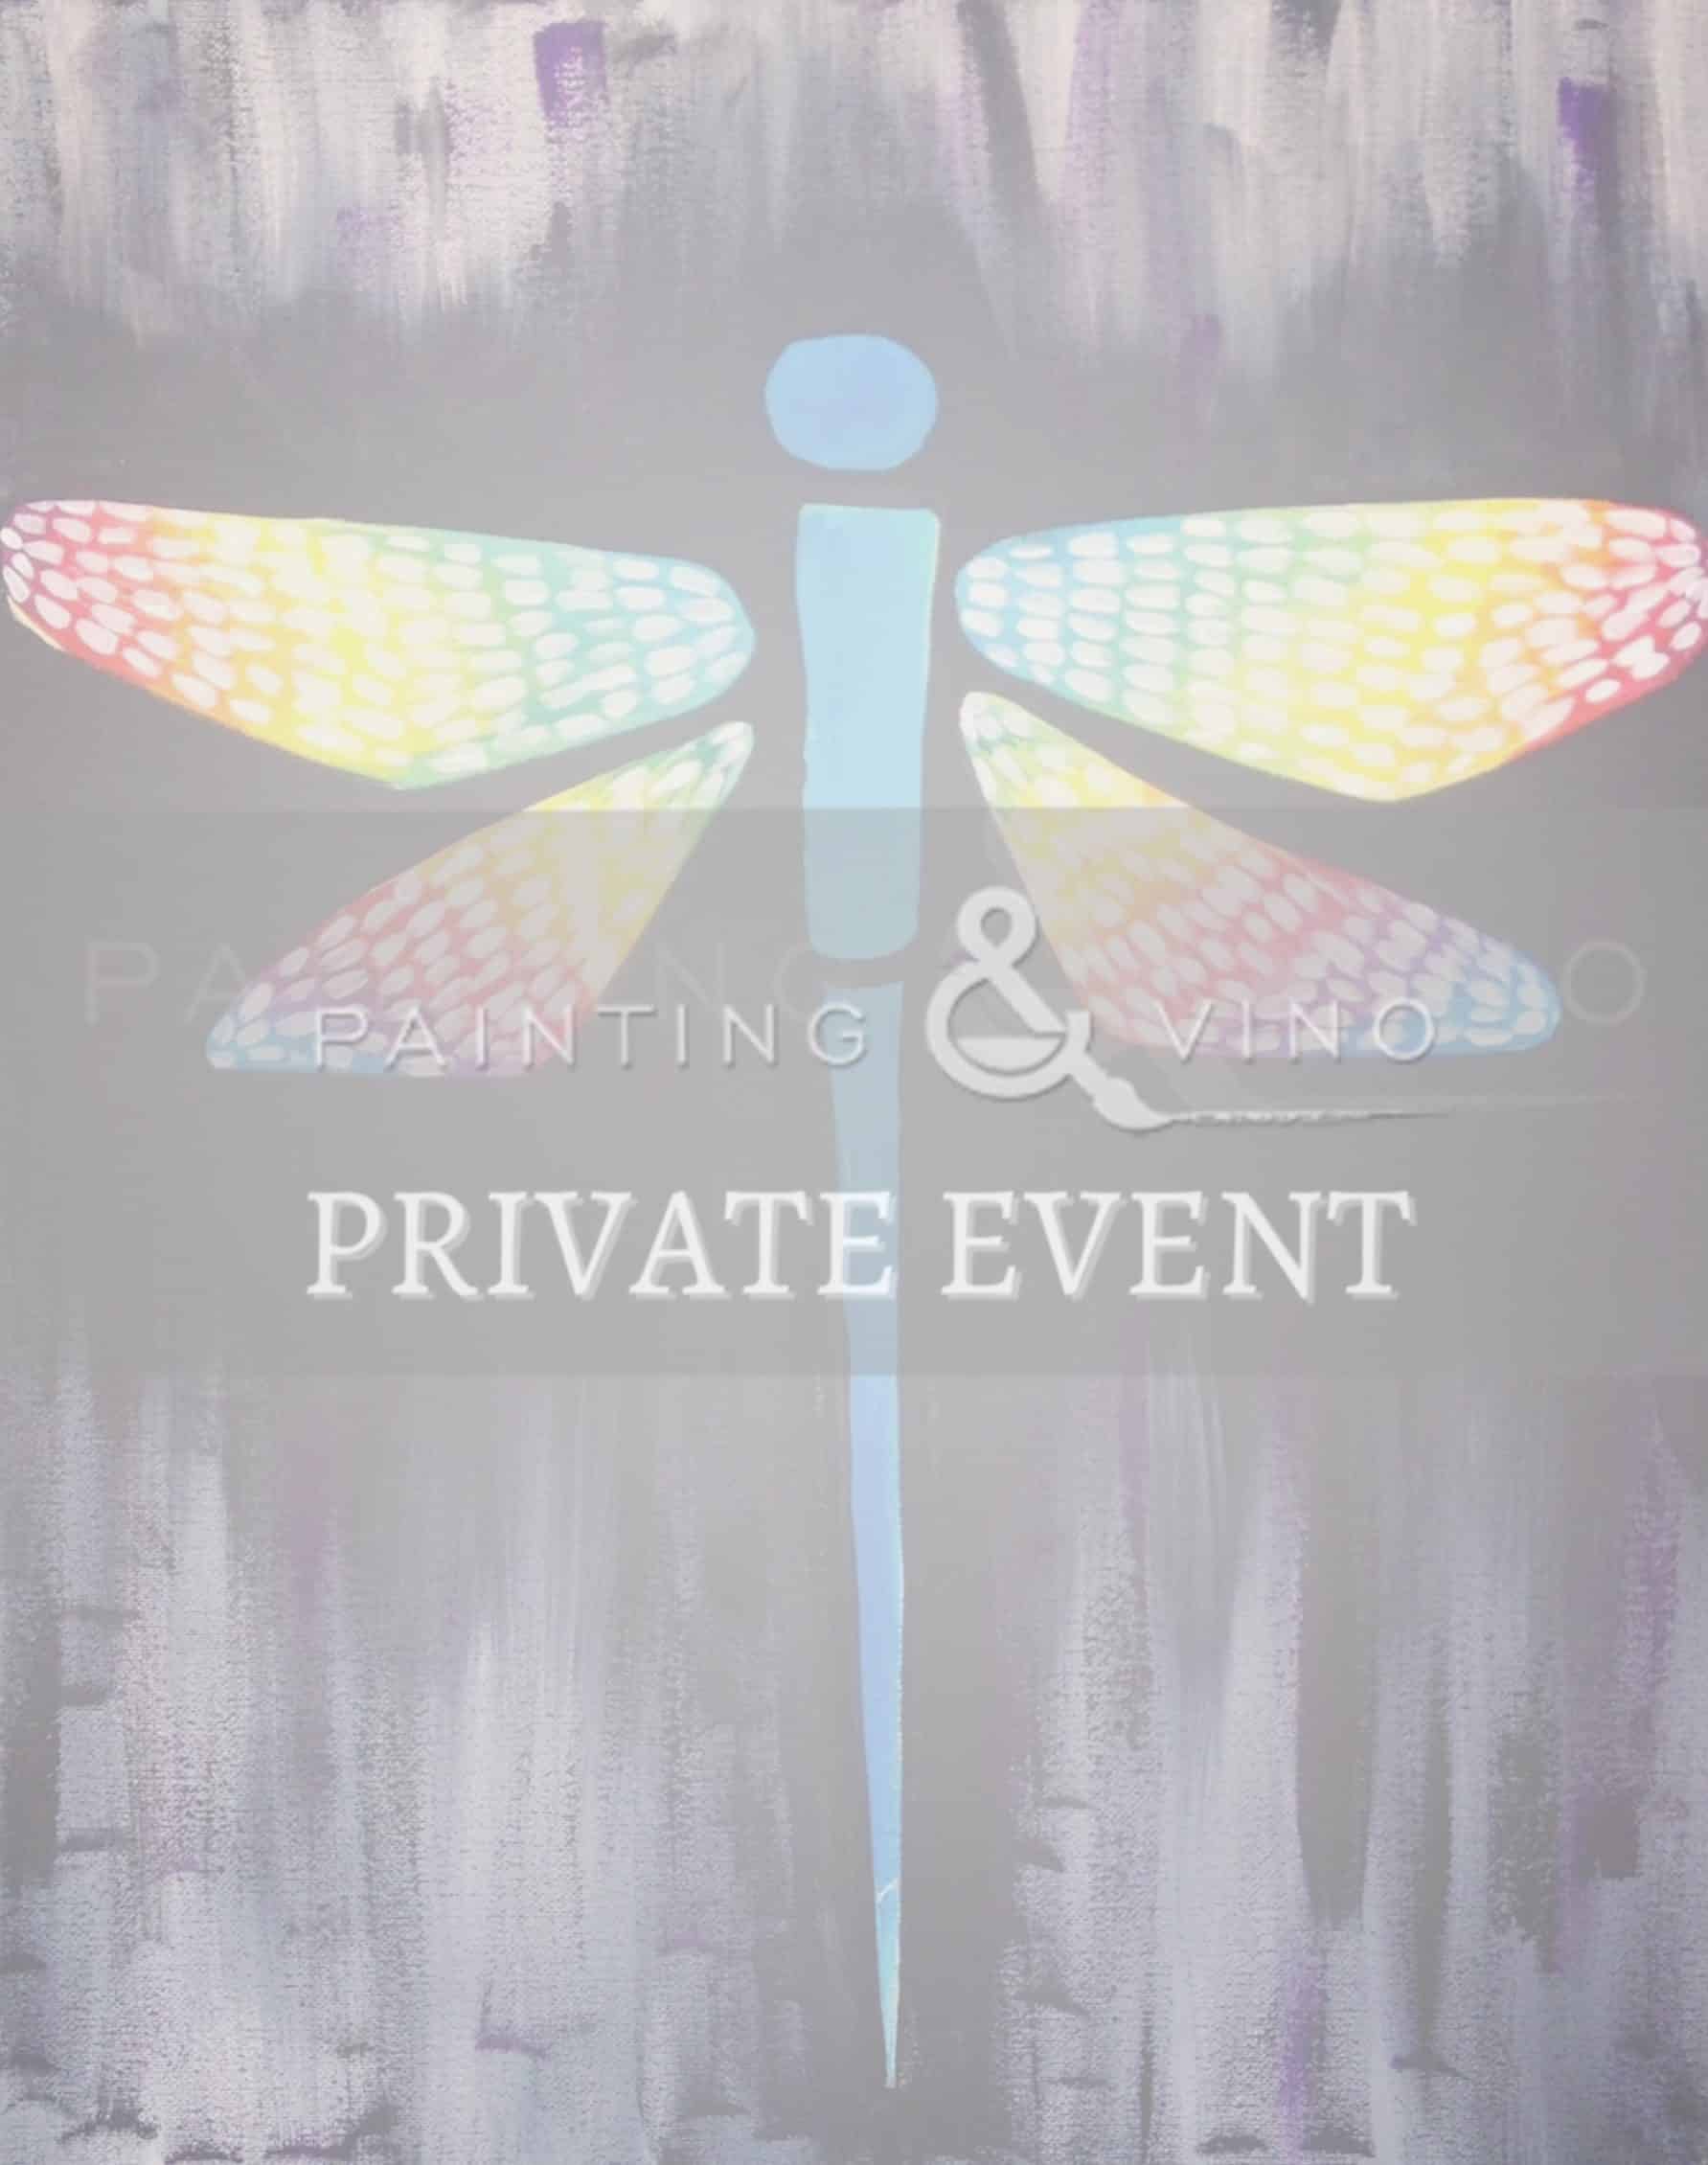 Private Event Image